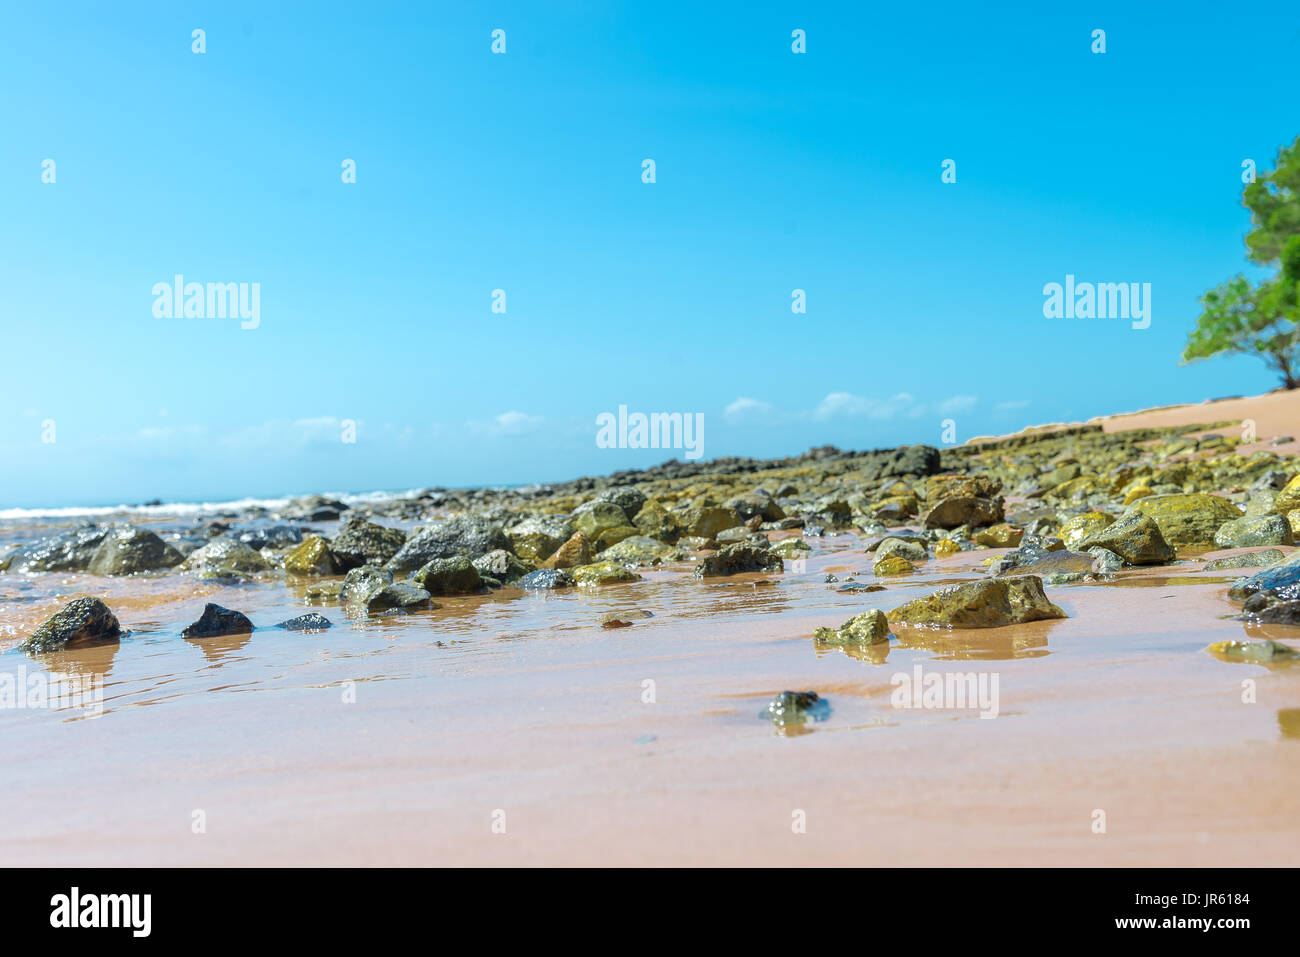 Spiaggia di texture di superficie sabbiosa con ondulazioni formate dal vento Foto Stock